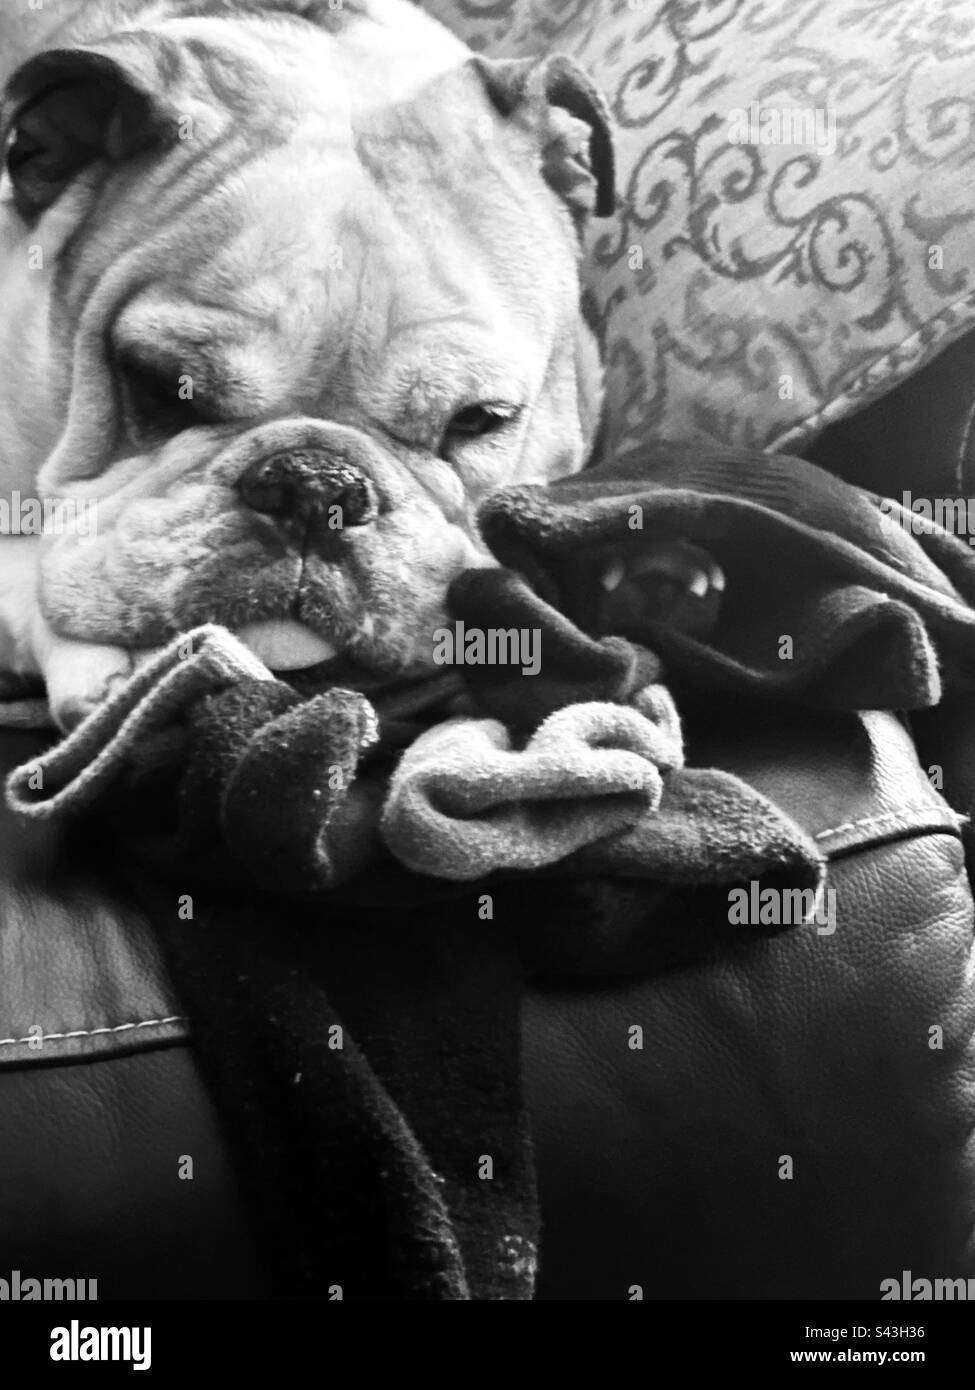 Divertente Bulldog inglese. Gli amanti degli animali possono ottenere il loro calzino extra indietro; infine.😂 Foto Stock